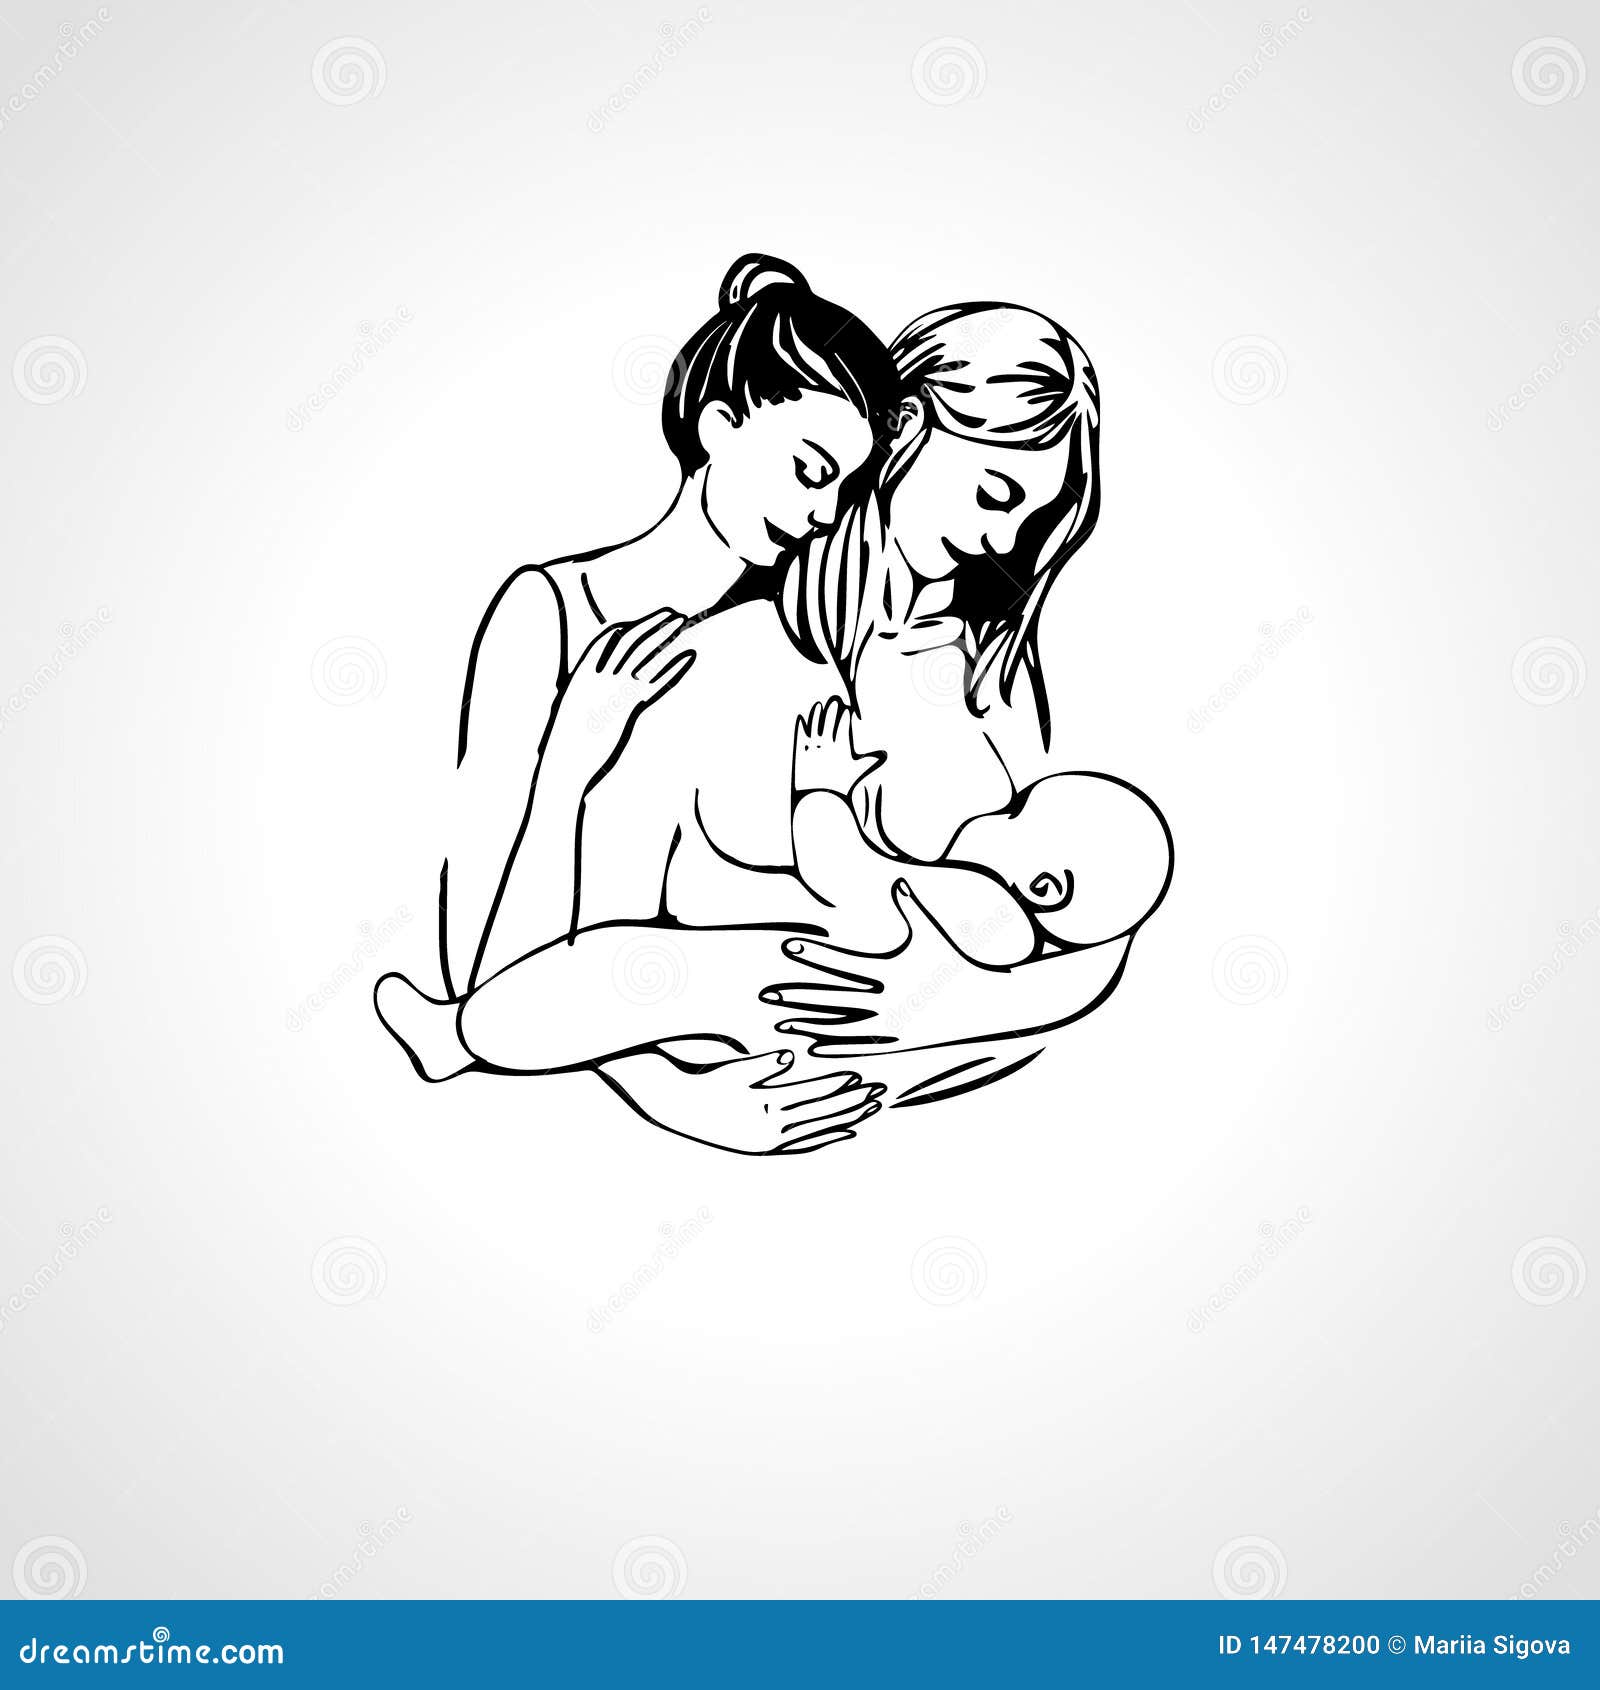 Lesbians Breastfeeding Each Other